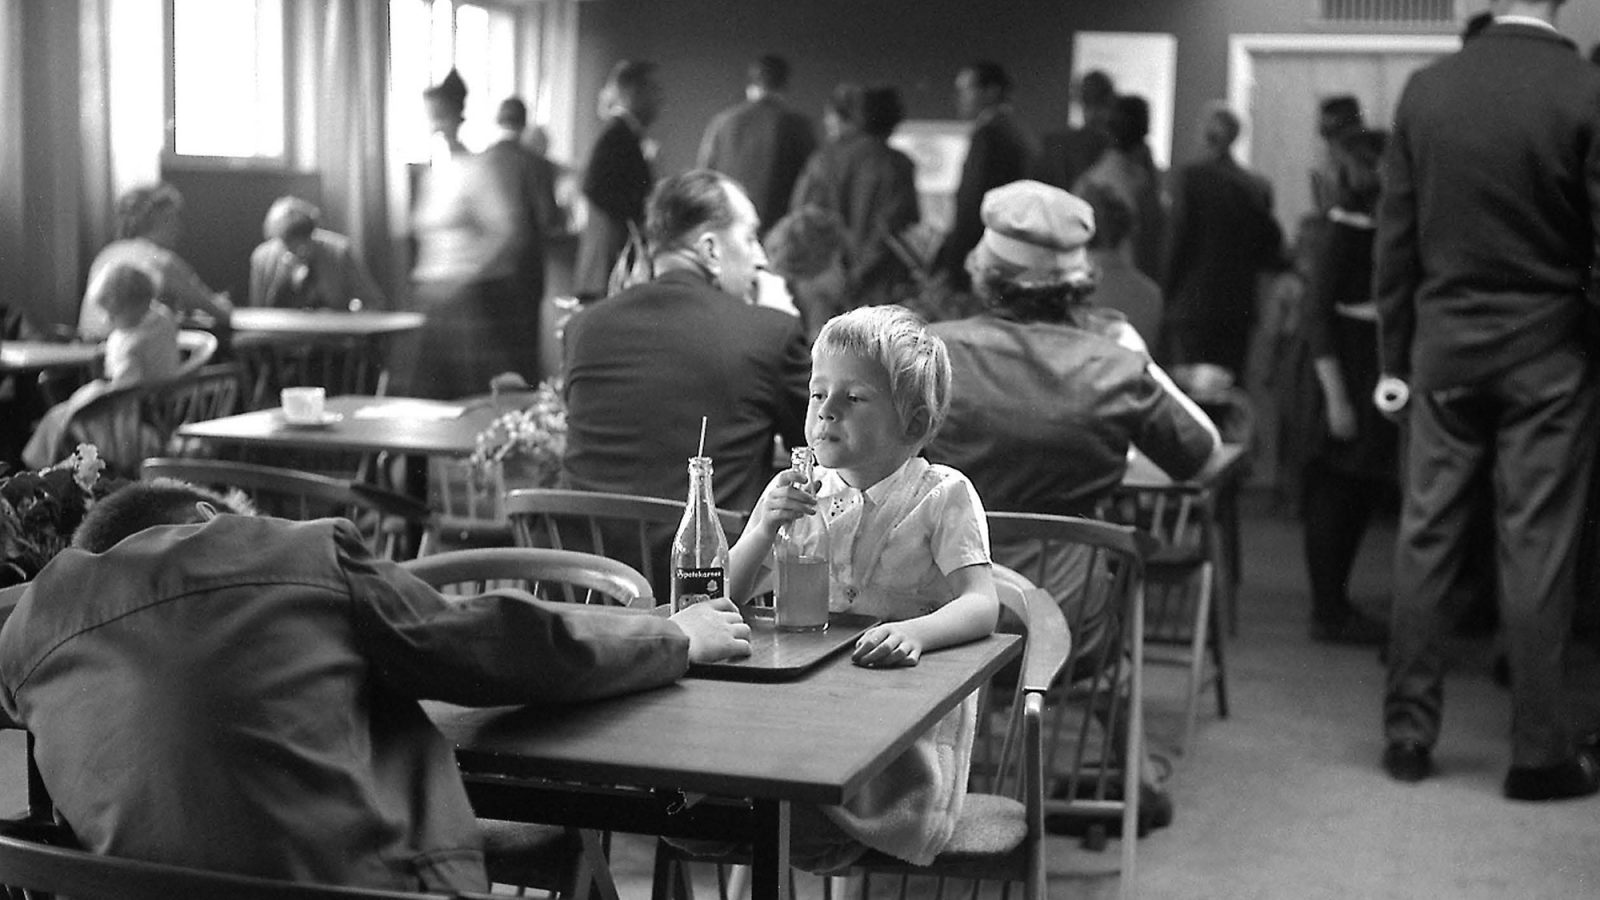 Un enfant boit du soda avec une paille dans une bouteille en verre, restaurant plein, meublé dans le style des années 1960.